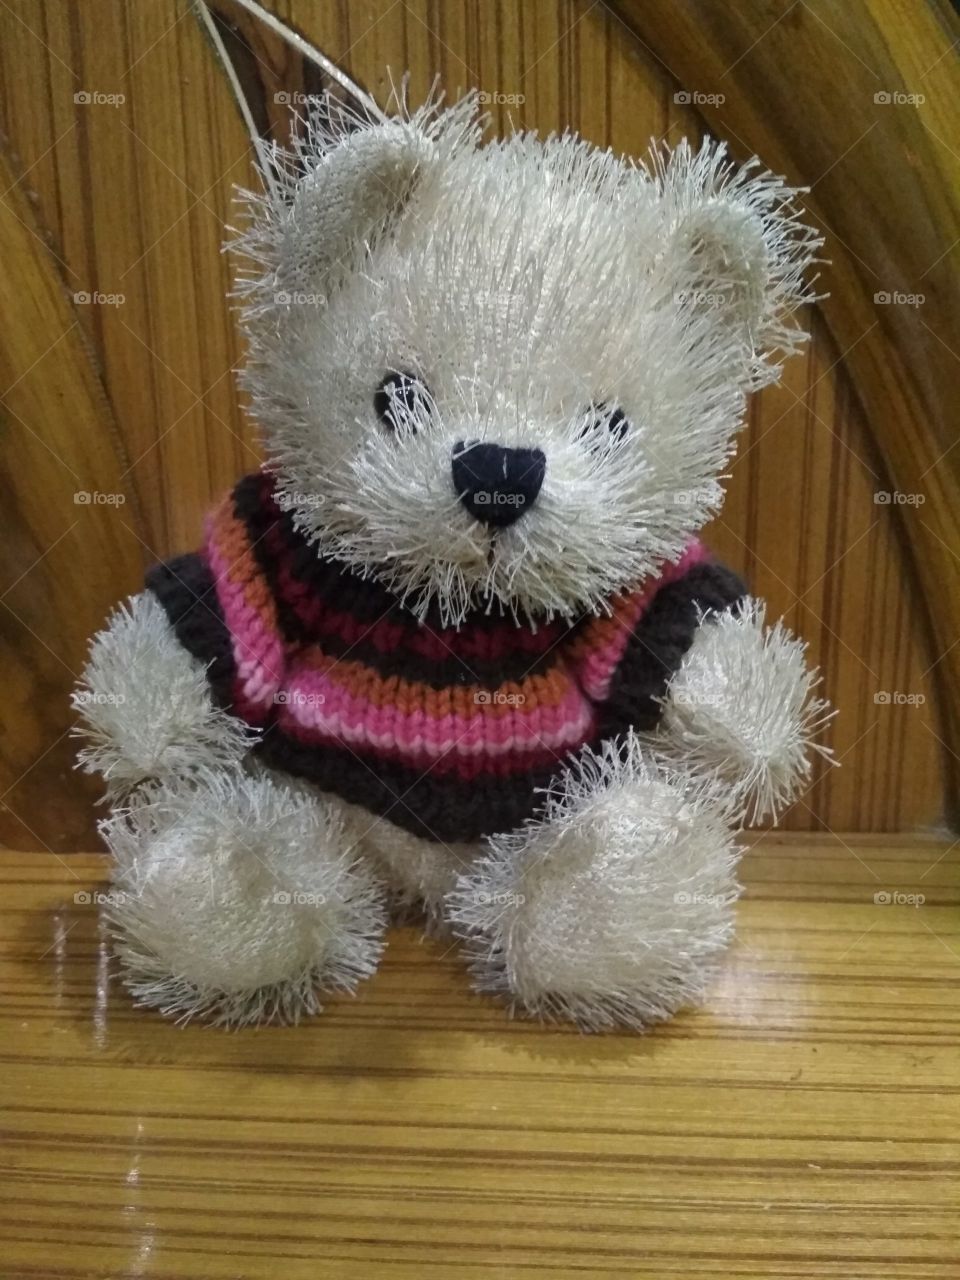 The little Teddy bear